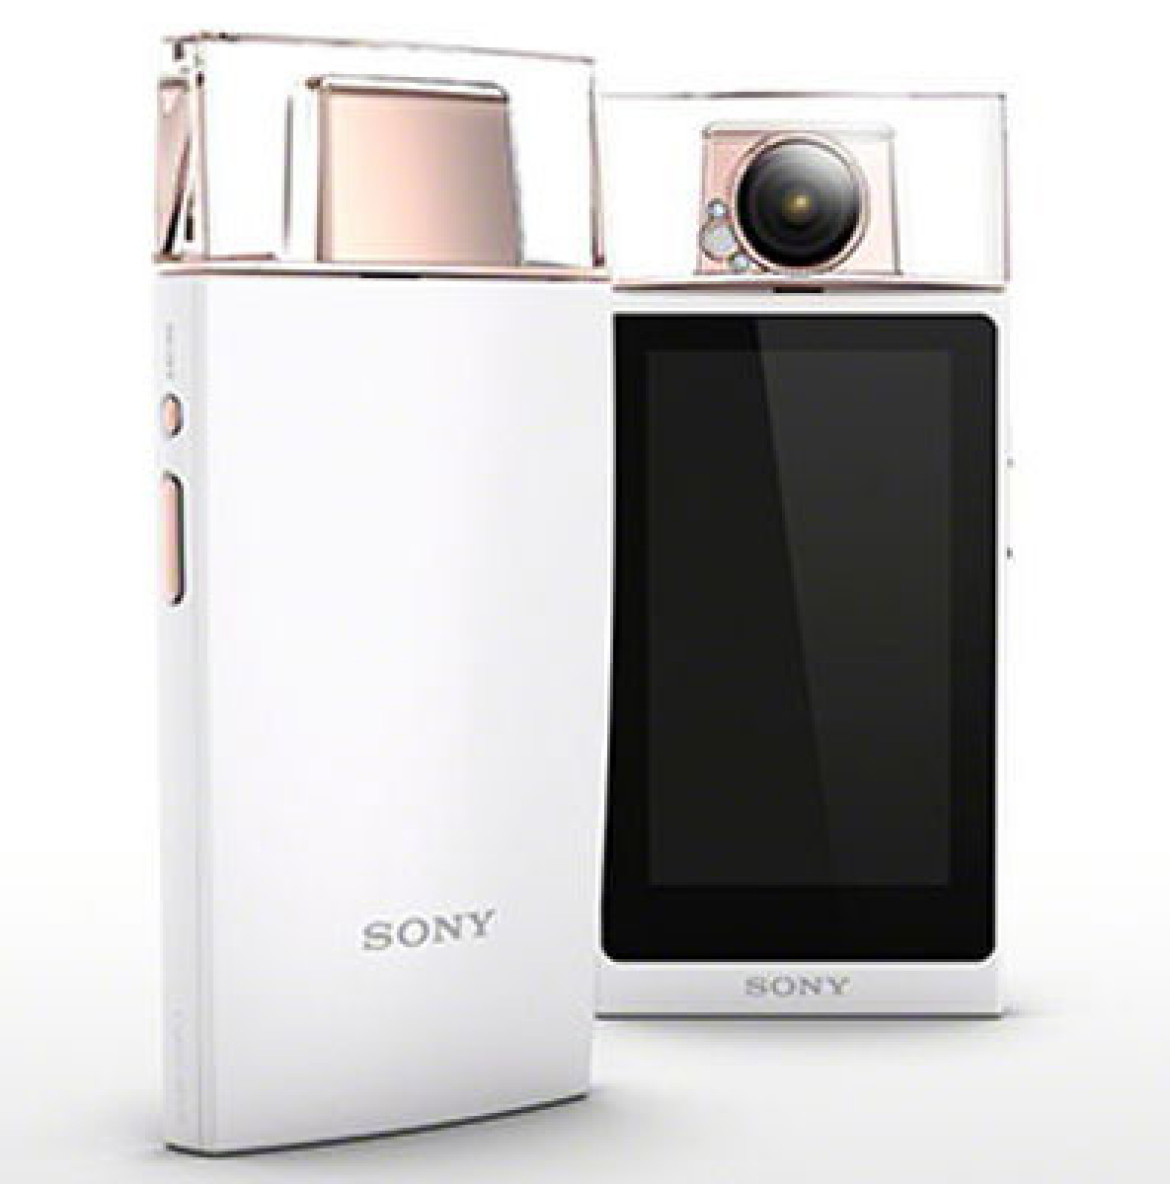 Sony Cyber-shot DSC-KW11